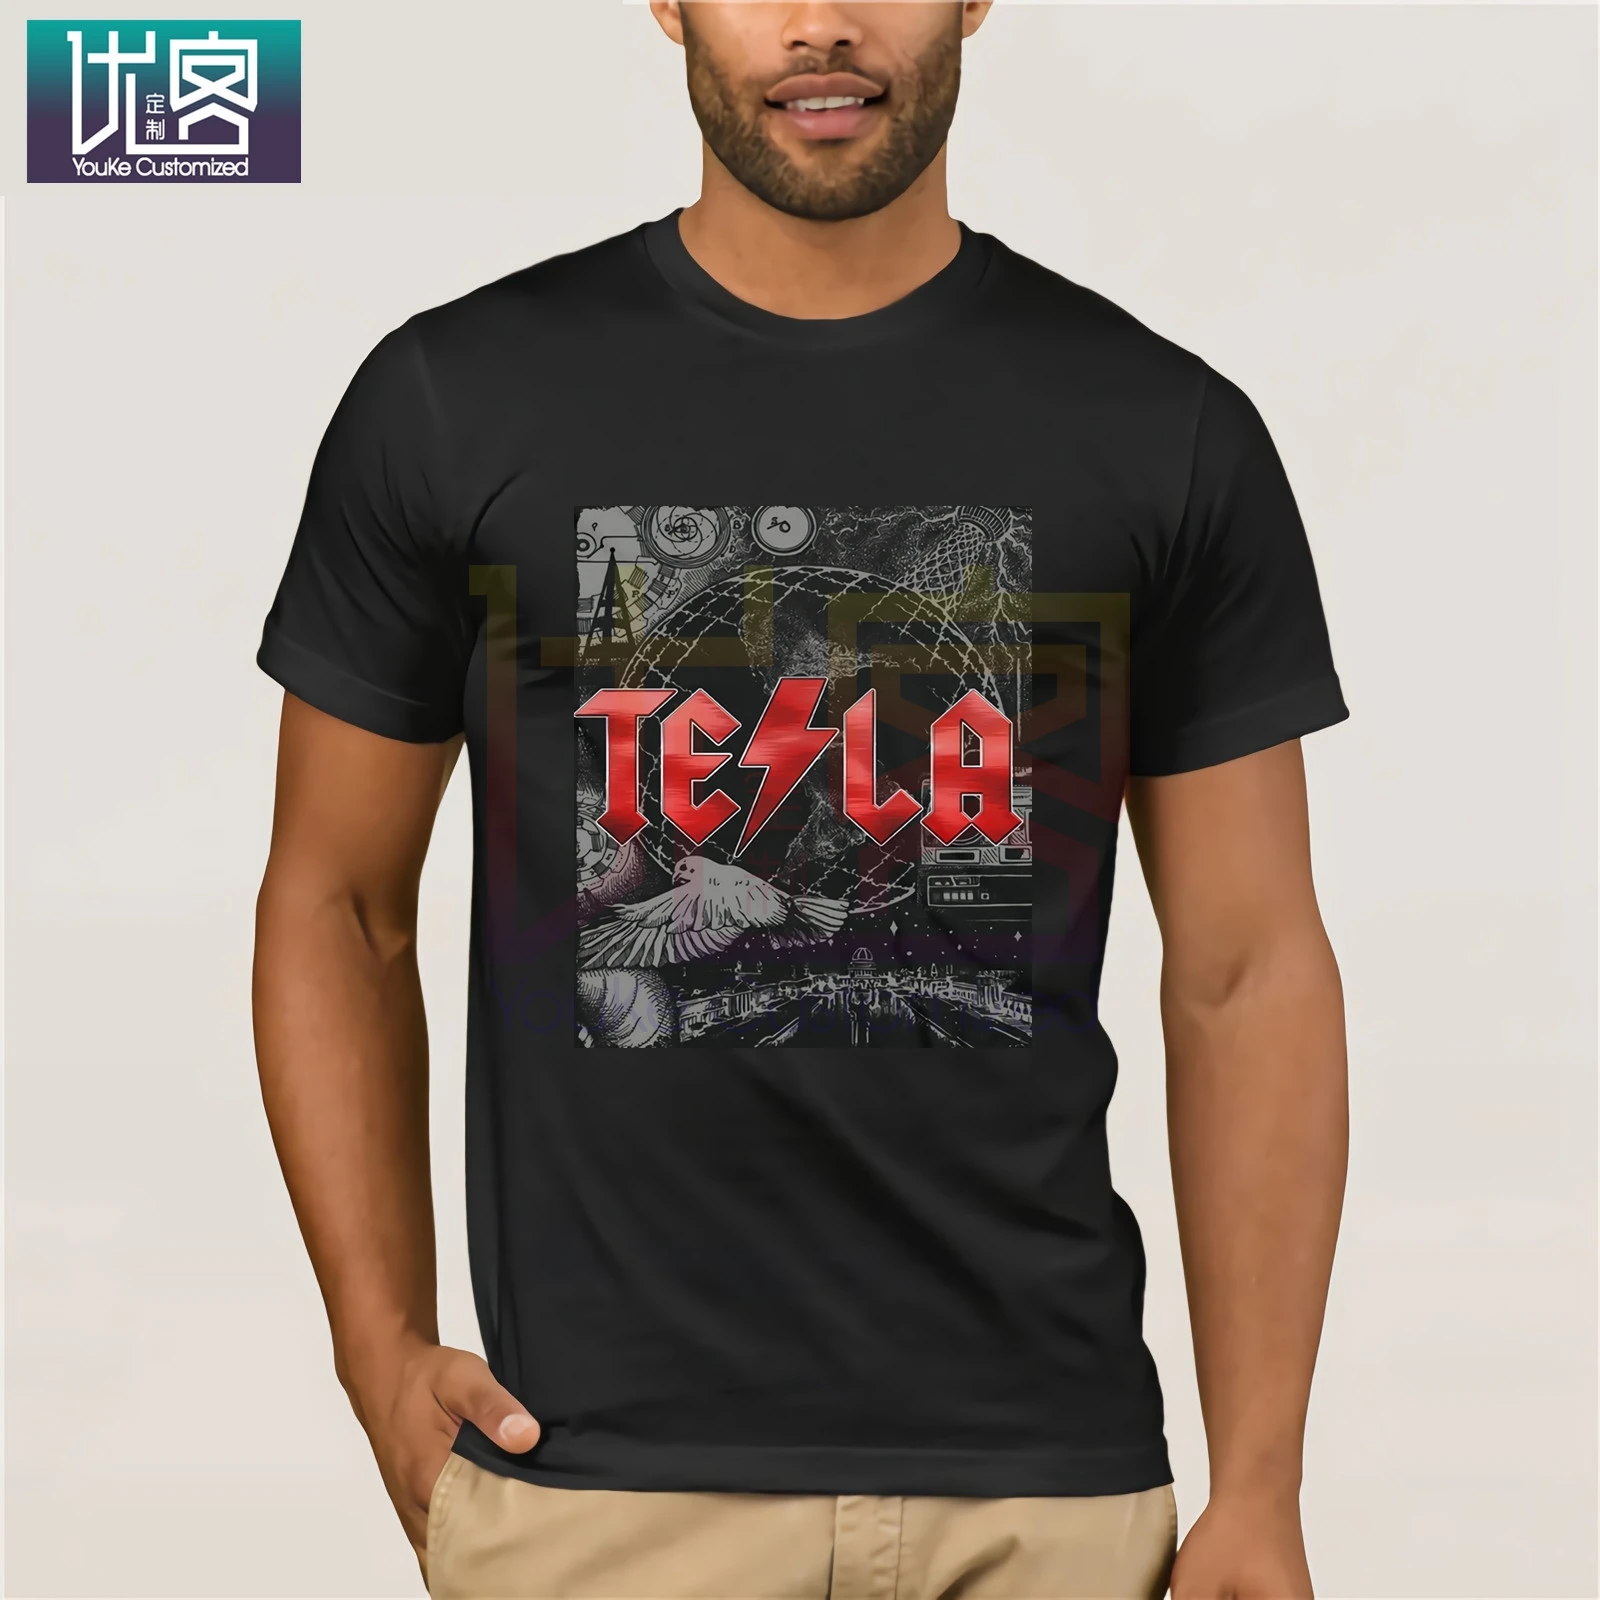 Фото 1Nikola Tesla футболка illustratie AC DC Gratis ingenieur Korte Mouw Ronde Hals Promotie для мужчин топы|Мужские